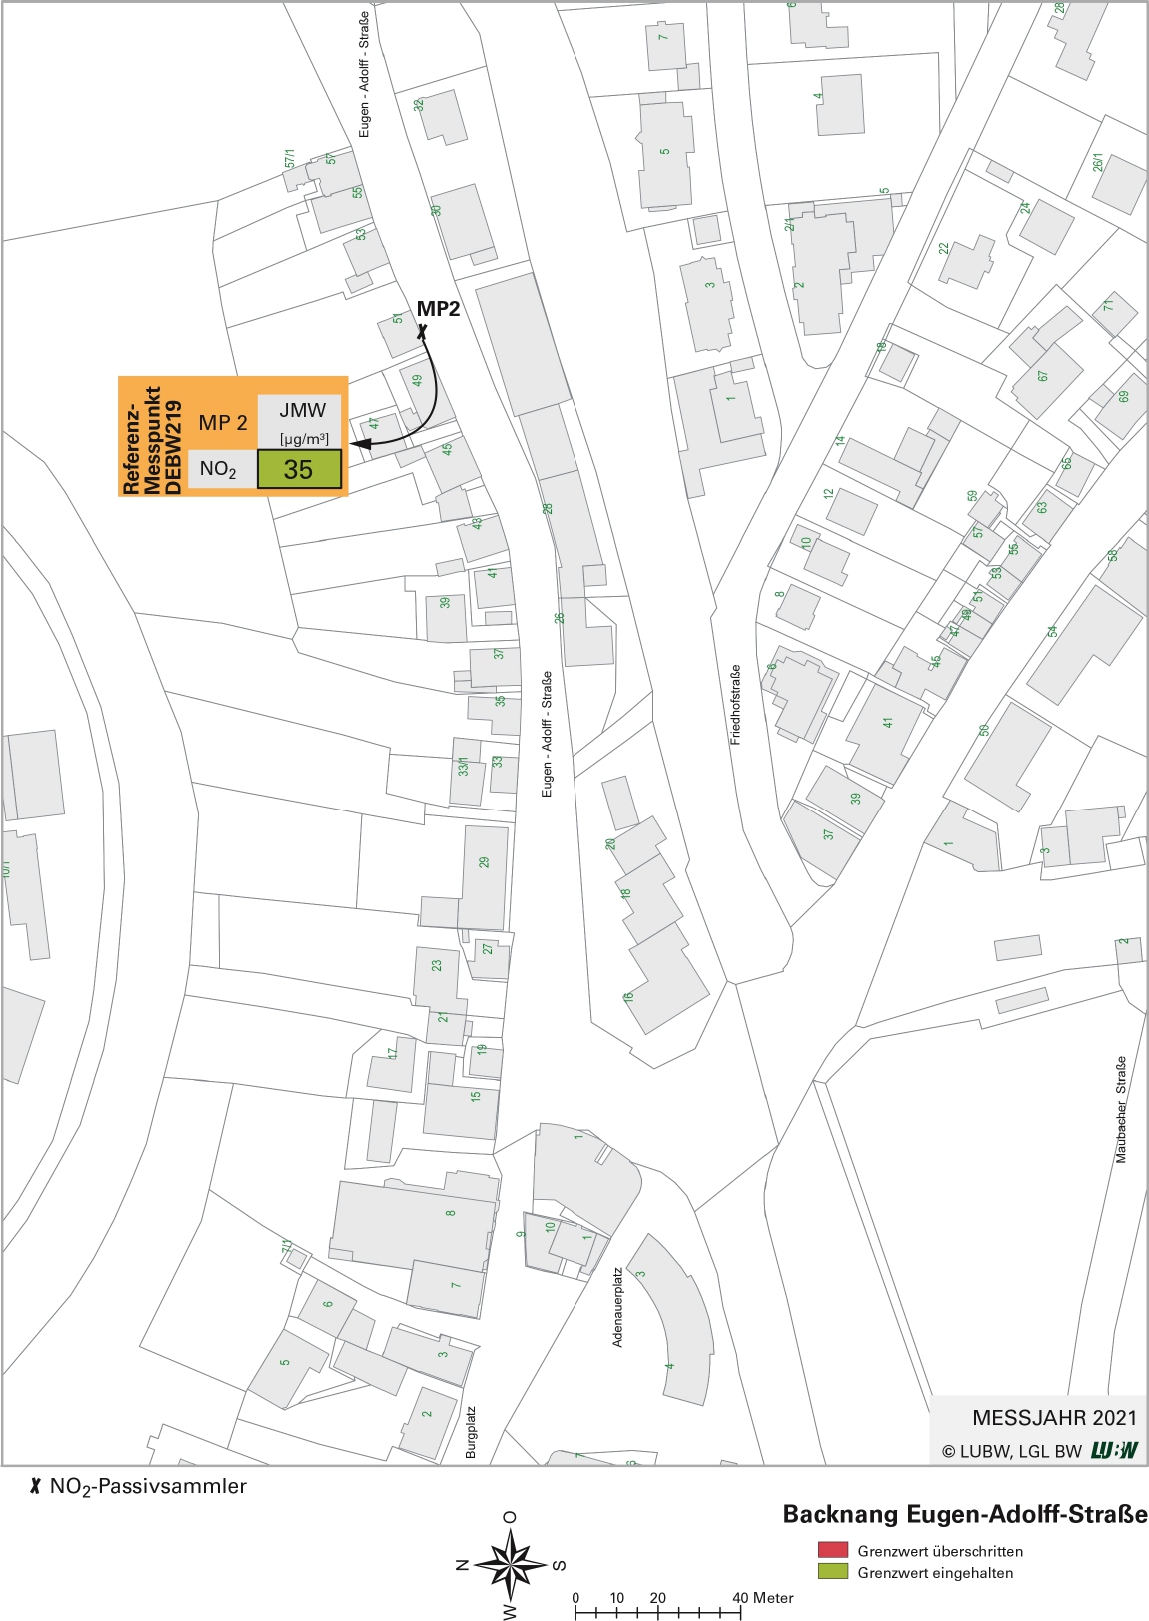 Kartenausschnitt, der die Lage der Messstelle Backnang Eugen-Adolff-Straße (Referenzmesspunkt) zeigt. Dargestellt ist zudem das Ergebnis (Jahresmittelwerte 2021) der gemessenen Stickstoffdioxidbelastung.